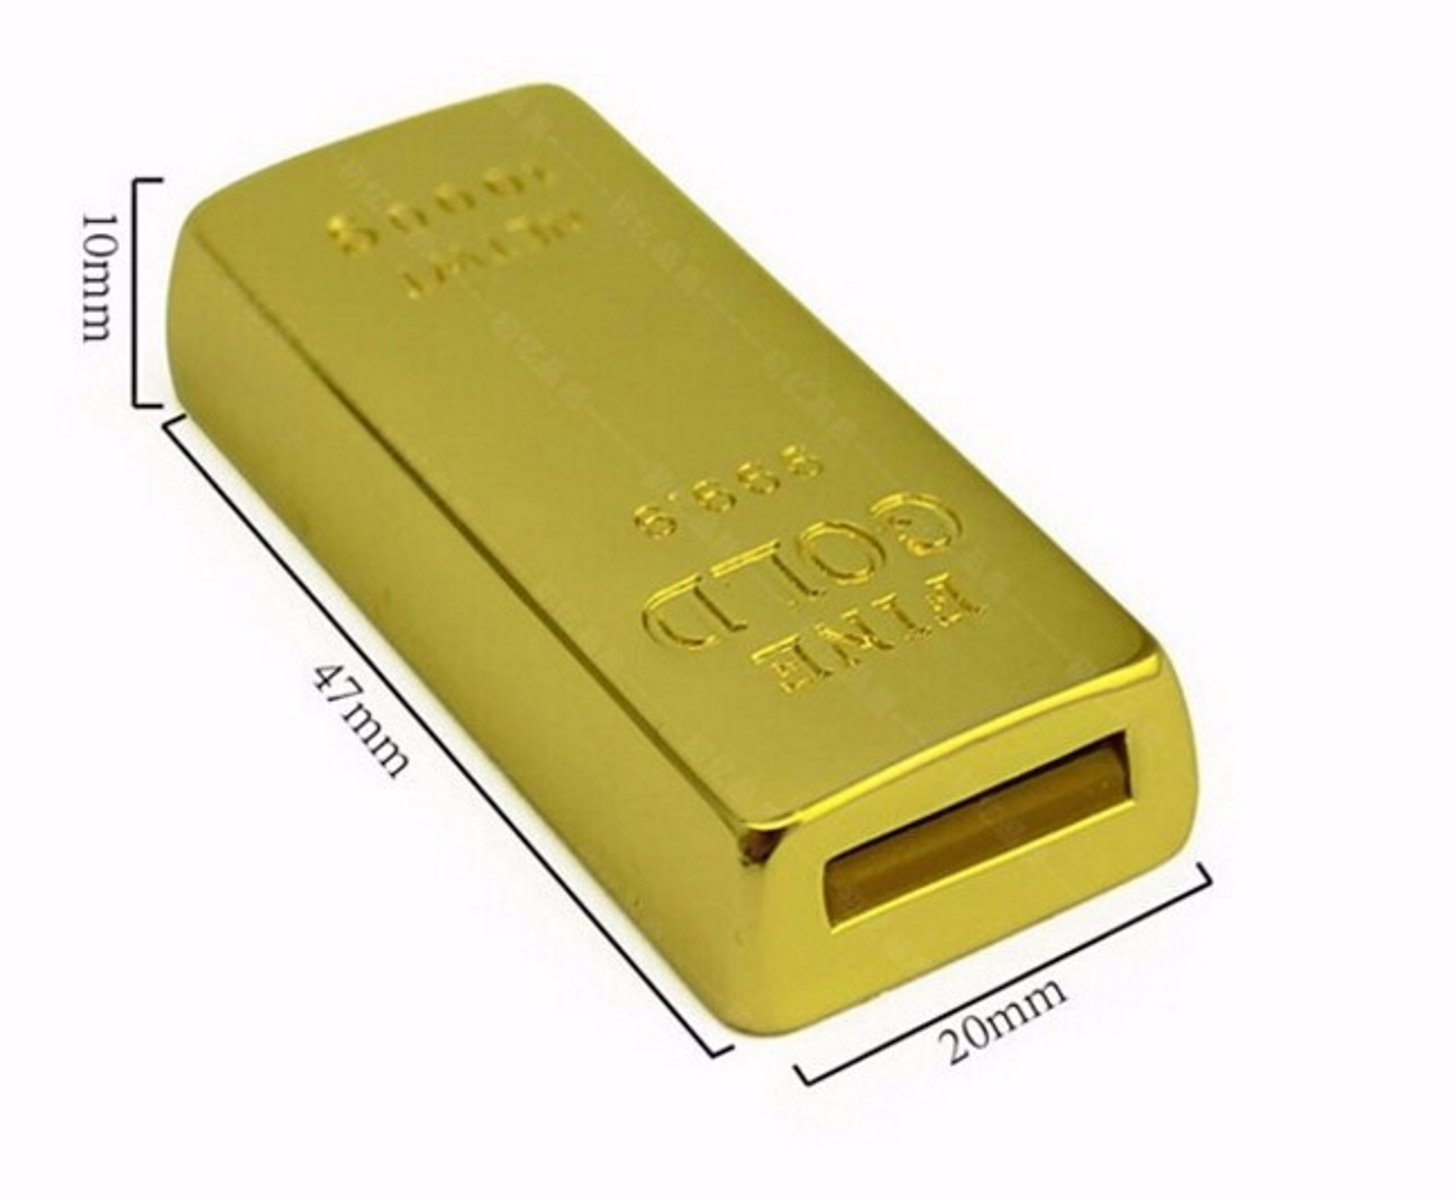 ® Goldbarren USB-Stick GERMANY (Gold, USB 4 GB)